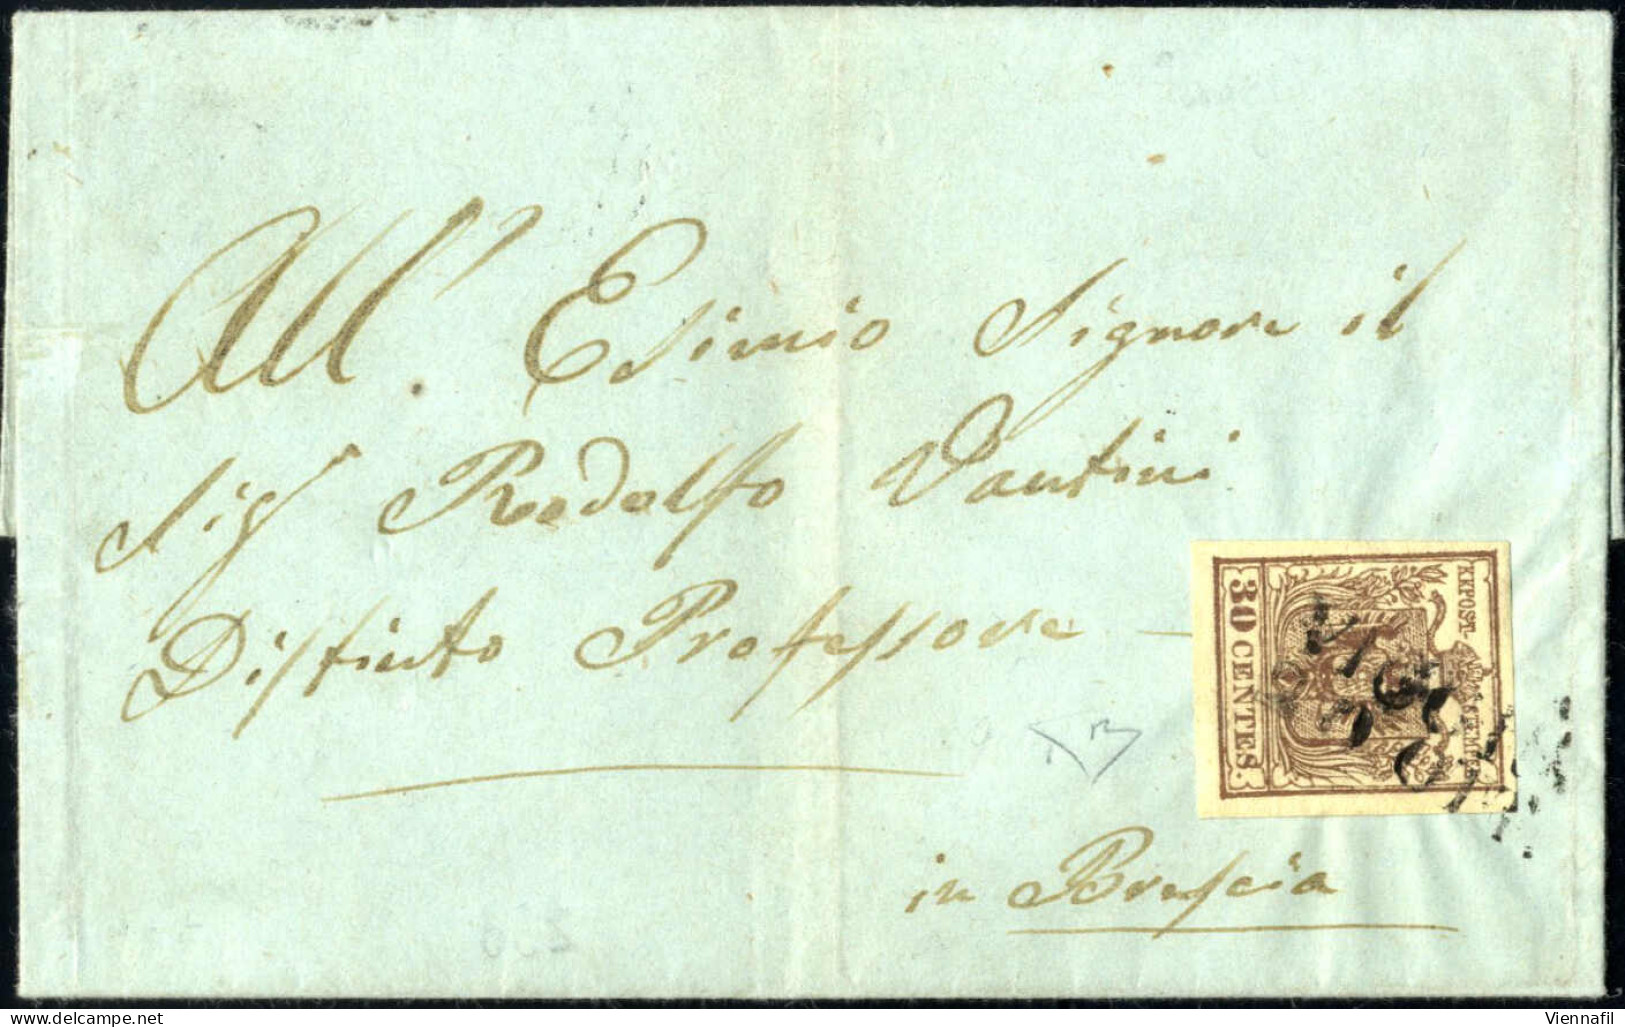 Cover Viggiù, SD Punti 12, Lettera Del 20.10.1854 Per Brescia Affrancata Con 30 C. Bruno Lillaceo II Tipo Carta A Mano,  - Lombardy-Venetia